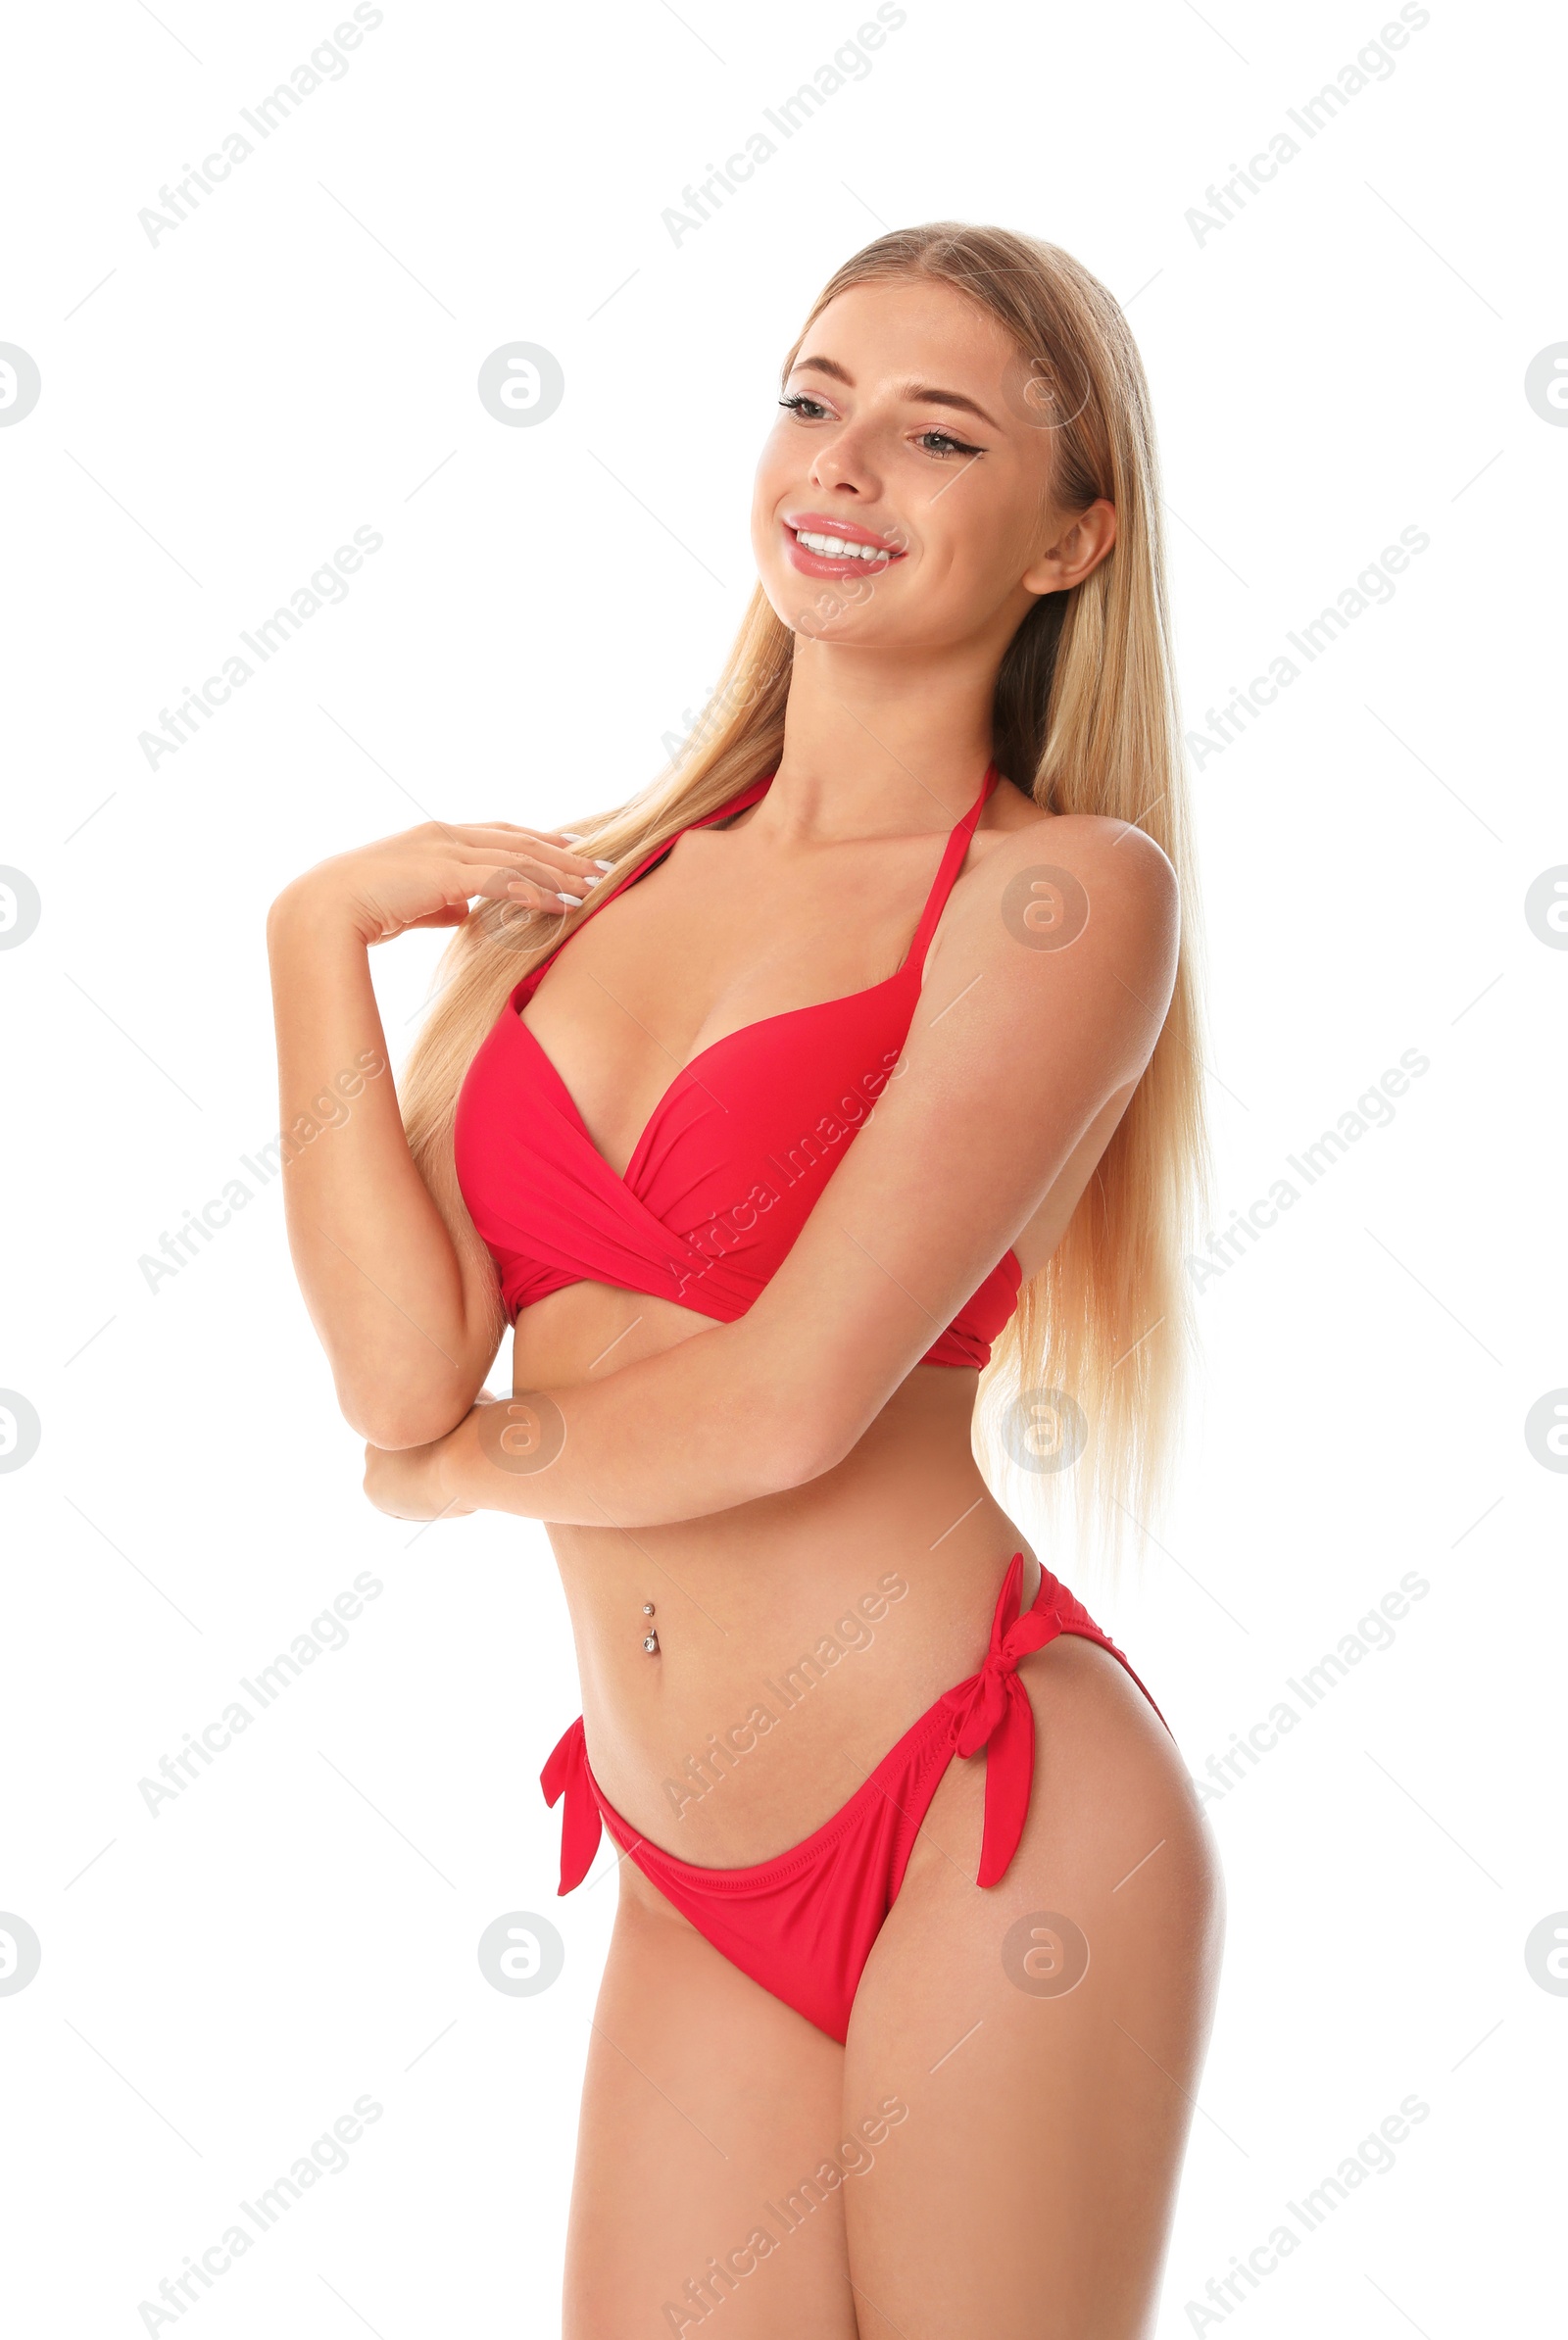 Photo of Pretty young woman wearing stylish bikini on white background